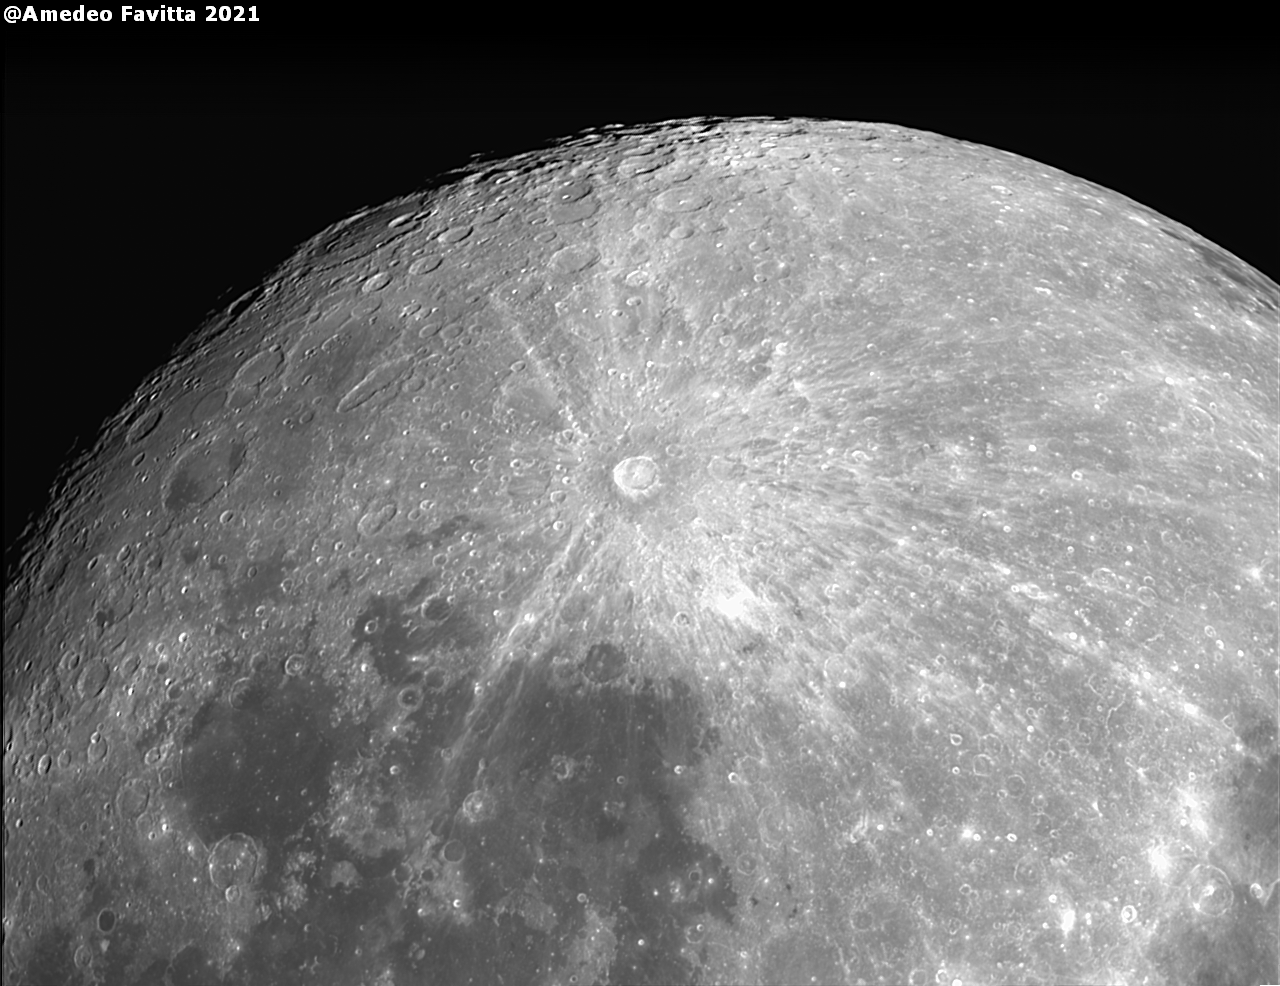 Dettaglio Luna piena con cratere Tycho Brahe